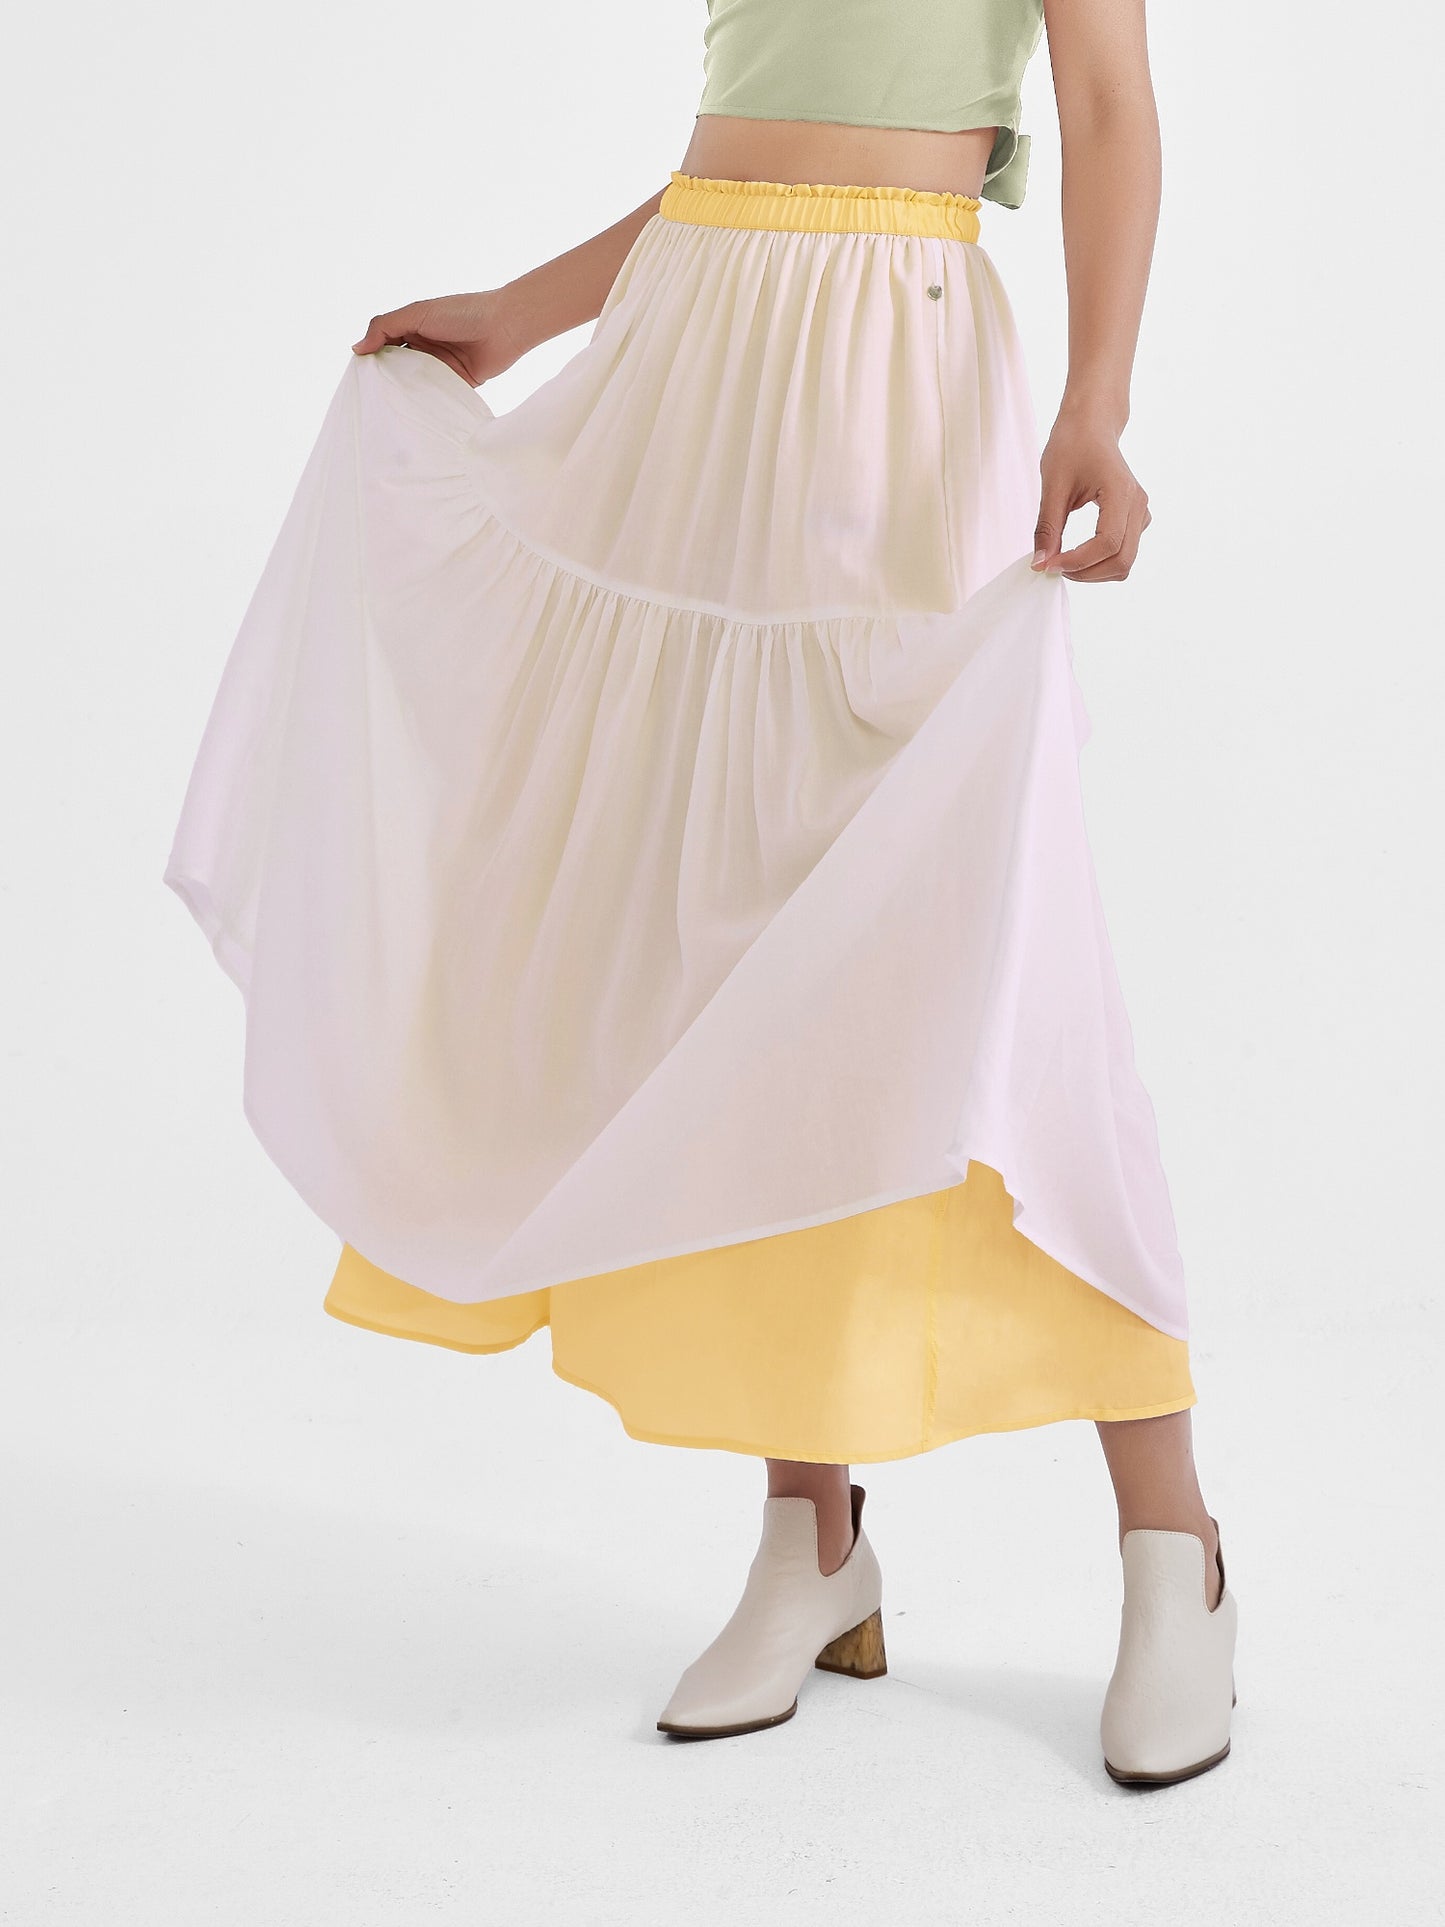 Sunflower Skirt, Reversible + Multi-Color